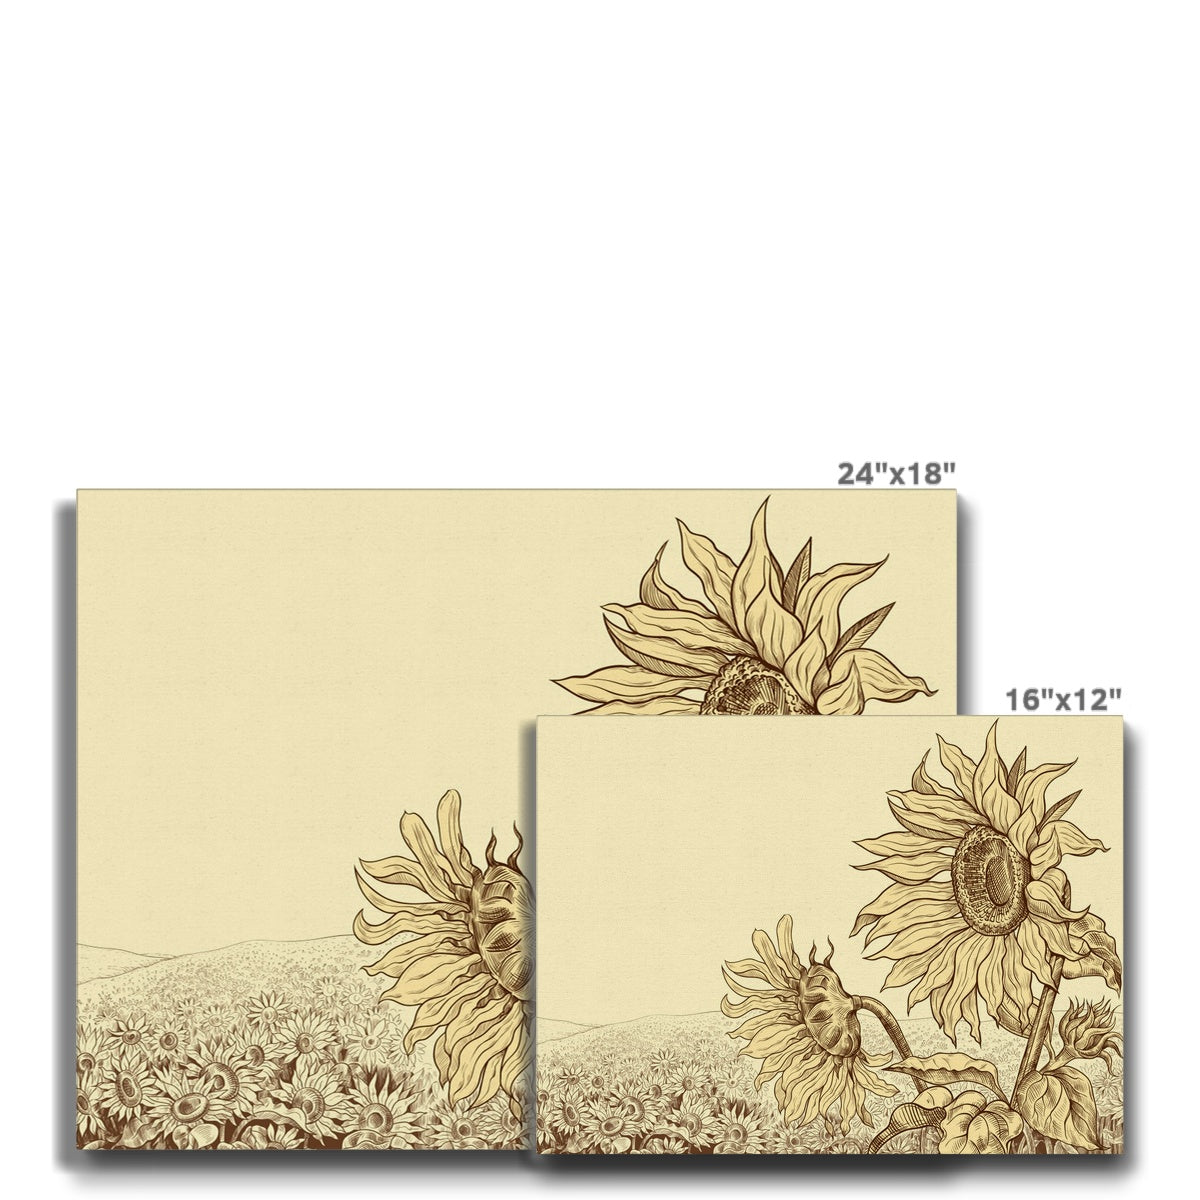 Wilted Sunflower Sketch Canvas